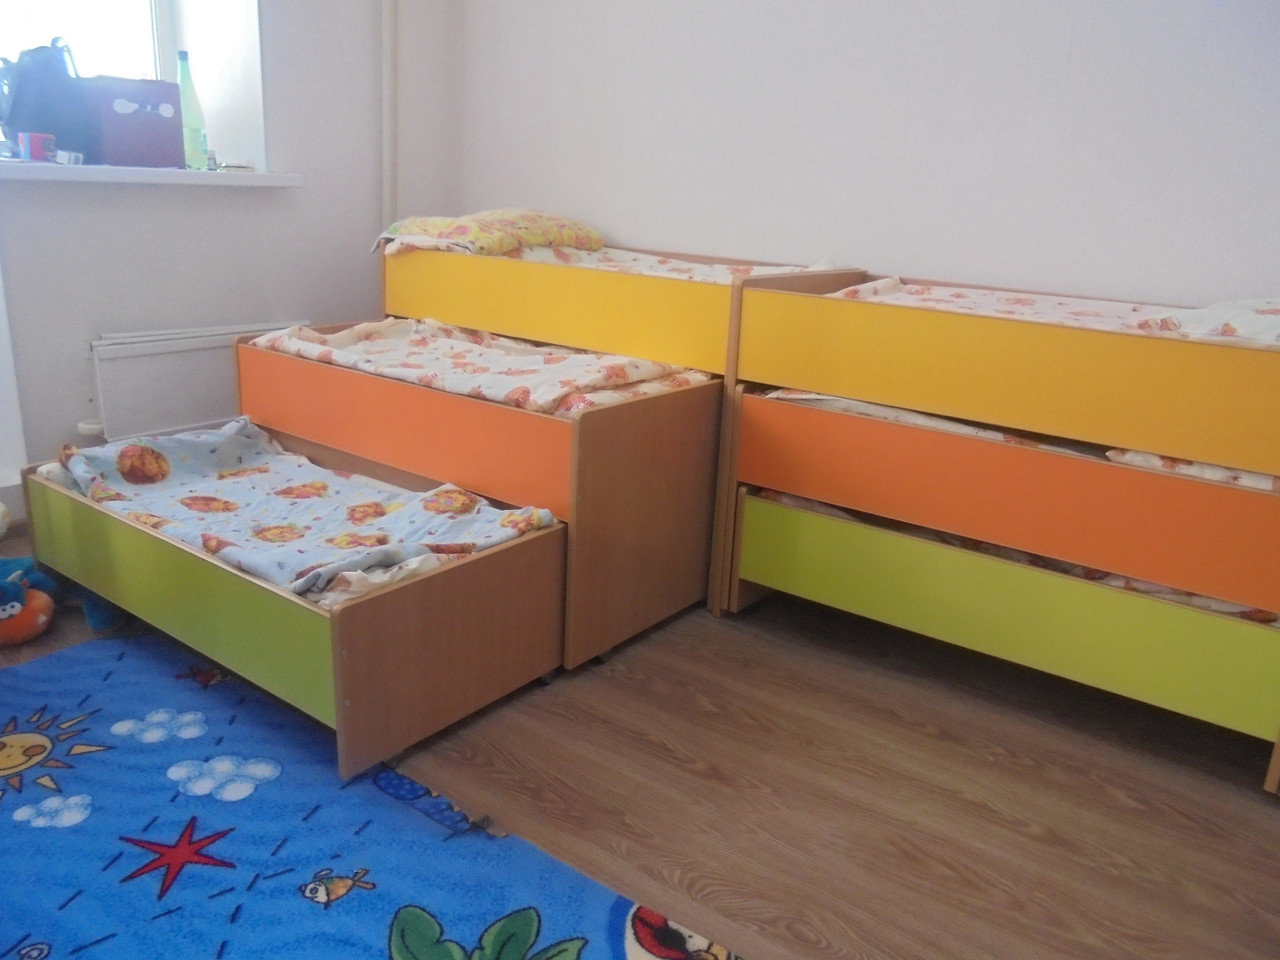 Трехъярусная выкатная. Кровать трехъяруснвыдвижнаядля детских садов. Кровать трехъярусная выдвижная для детских садов. Кровать 3-х ярусная выкатная для детских садов. Кровать четырехъярусная выкатная для детского сада.